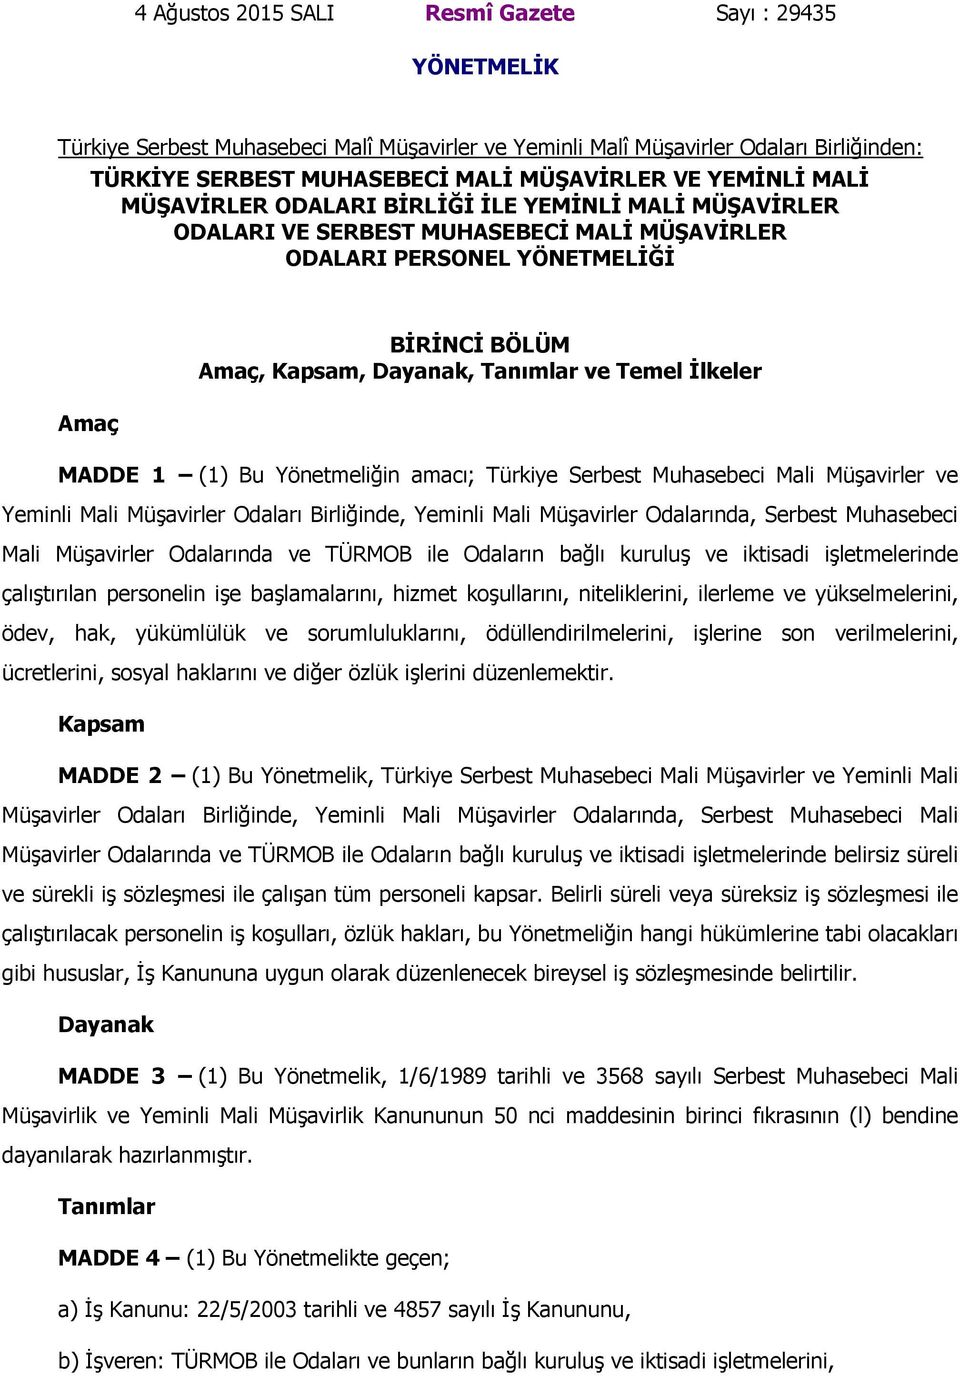 Temel İlkeler MADDE 1 (1) Bu Yönetmeliğin amacı; Türkiye Serbest Muhasebeci Mali Müşavirler ve Yeminli Mali Müşavirler Odaları Birliğinde, Yeminli Mali Müşavirler Odalarında, Serbest Muhasebeci Mali